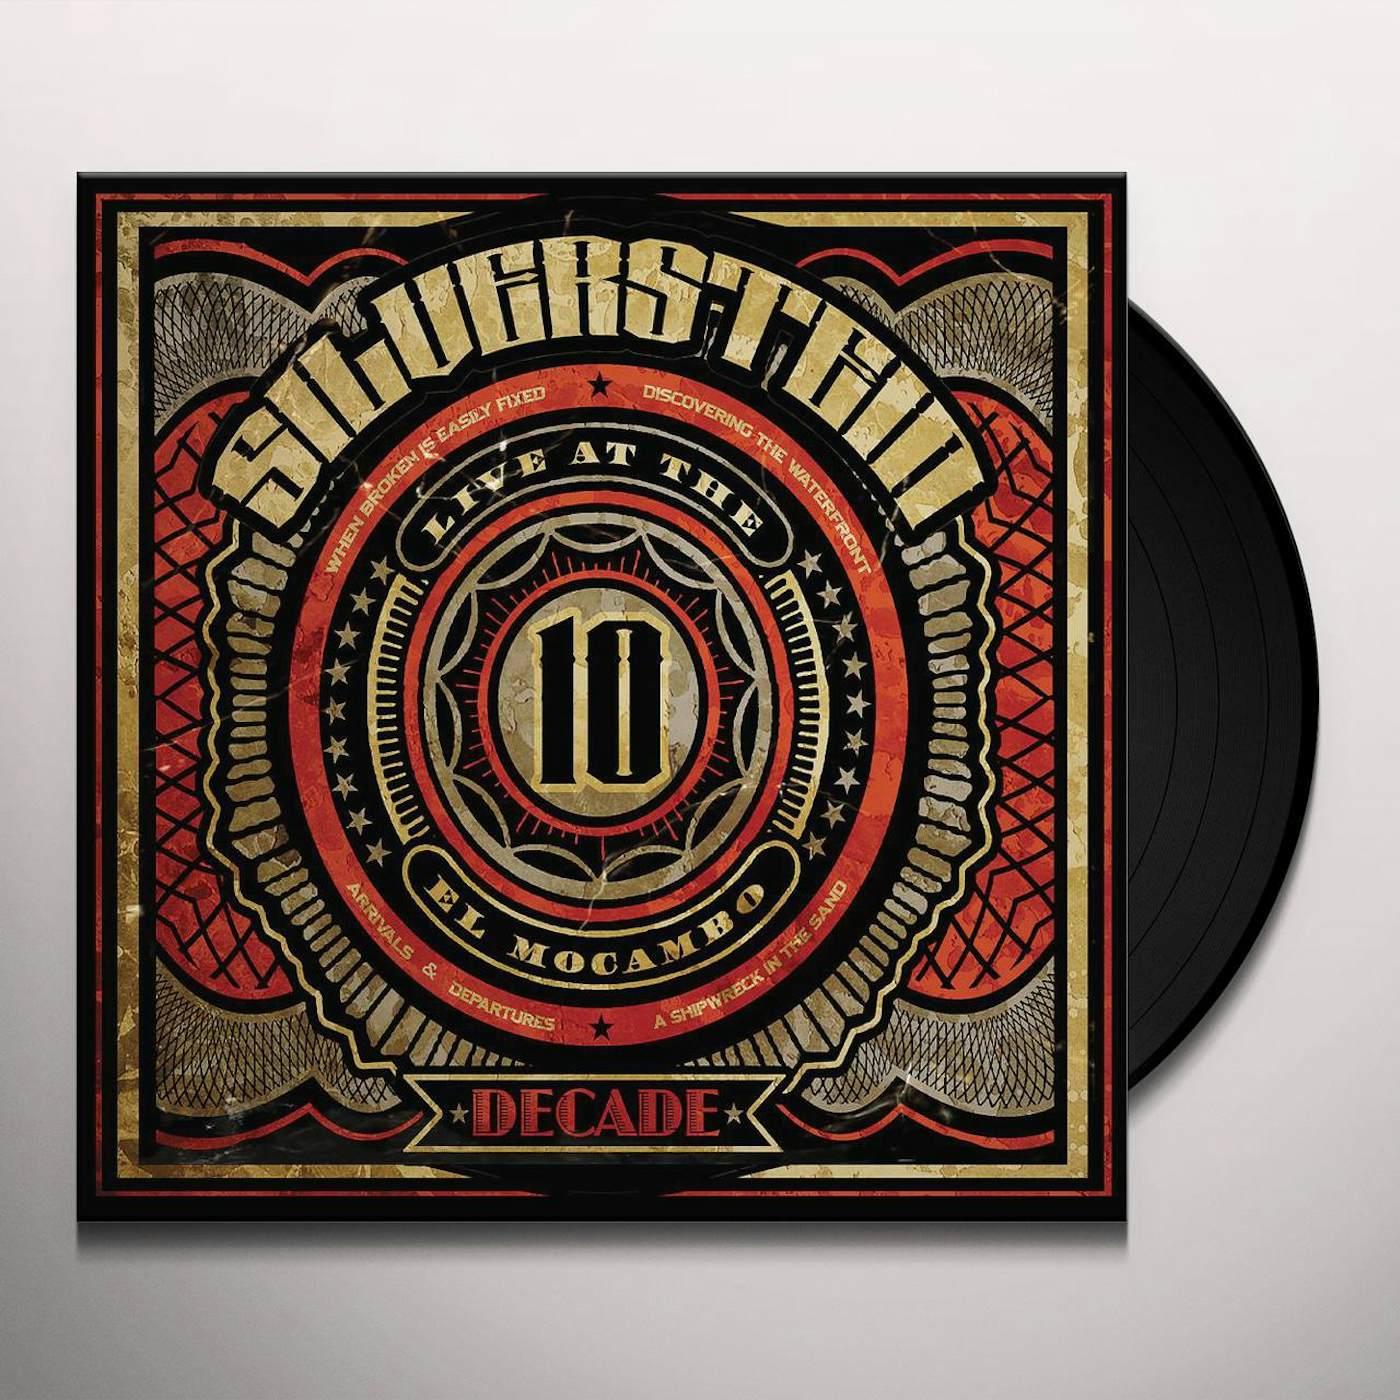 Silverstein Decade (Live at the El Macambo) Vinyl Record